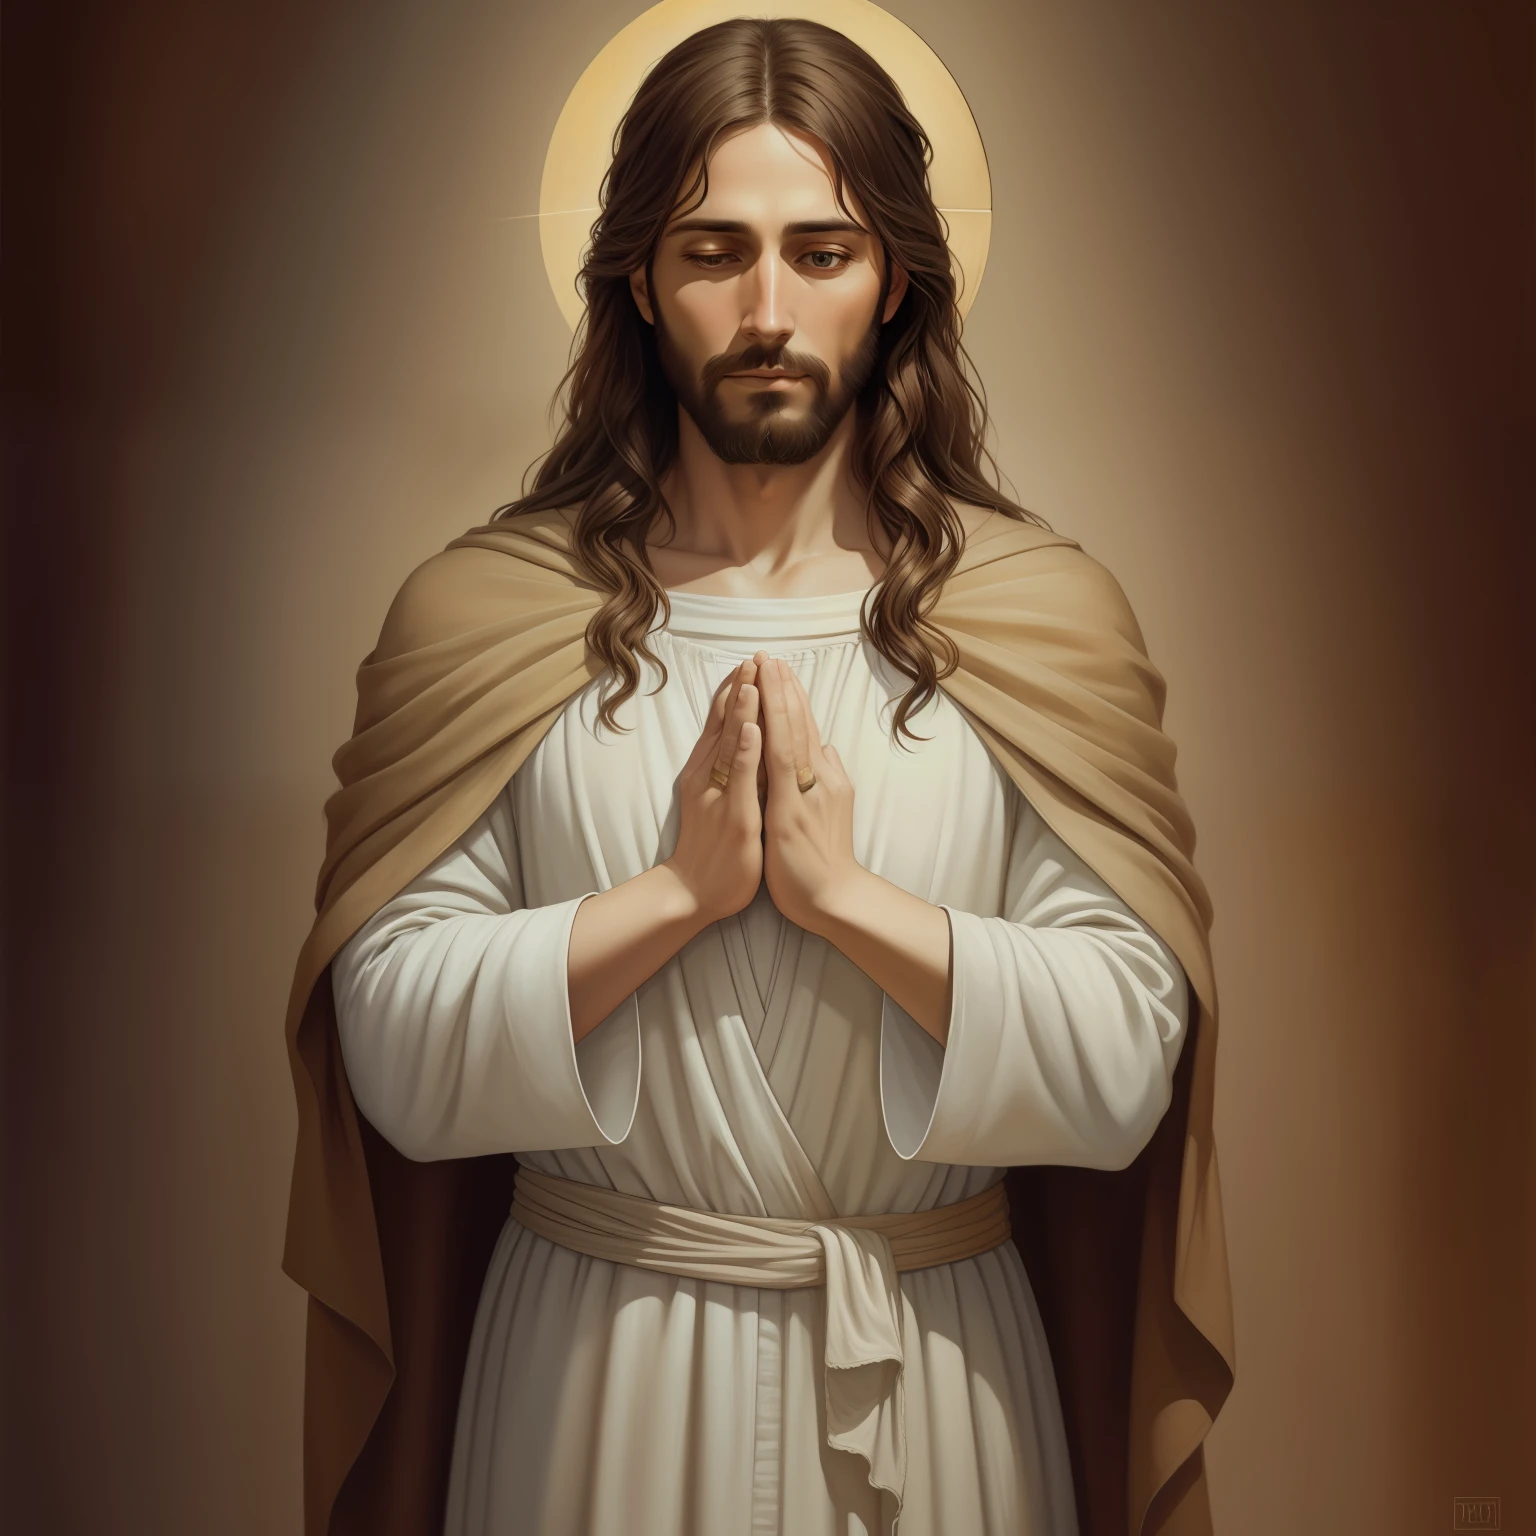 (ภาพถ่ายภาพยนตร์ของพระเยซู) A beautiful ultra-thin เหมือนจริง portrait of Jesus, ผู้เผยพระวจนะ, ผู้ชายอายุ 33 ปี ภาษาฮีบรูสีน้ำตาล, ผมสั้นสีน้ำตาล, หนวดเครายาวสีน้ำตาล, สวมเสื้อลินินตัวยาวปิดบริเวณหน้าอก, ในมุมมองด้านหน้า, เต็มตัว, ตามพระคัมภีร์, เหมือนจริง,โดย ดิเอโก้ เบลัซเกซ,ปีเตอร์ พอล รูเบนส์,แรมแบรนดท์,อเล็กซ์ รอสส์,8k, แนวคิดศิลปะ, Photoเหมือนจริง, เหมือนจริง,  ภาพประกอบ, ภาพวาดสีน้ำมัน, สถิตยศาสตร์, Hyperเหมือนจริง, อธิษฐาน , ศิลปะดิจิทัล, สไตล์, สีน้ำ, พื้นหลังตามธรรมชาติ, อธิษฐาน ( ผู้หญิงอวยพร)